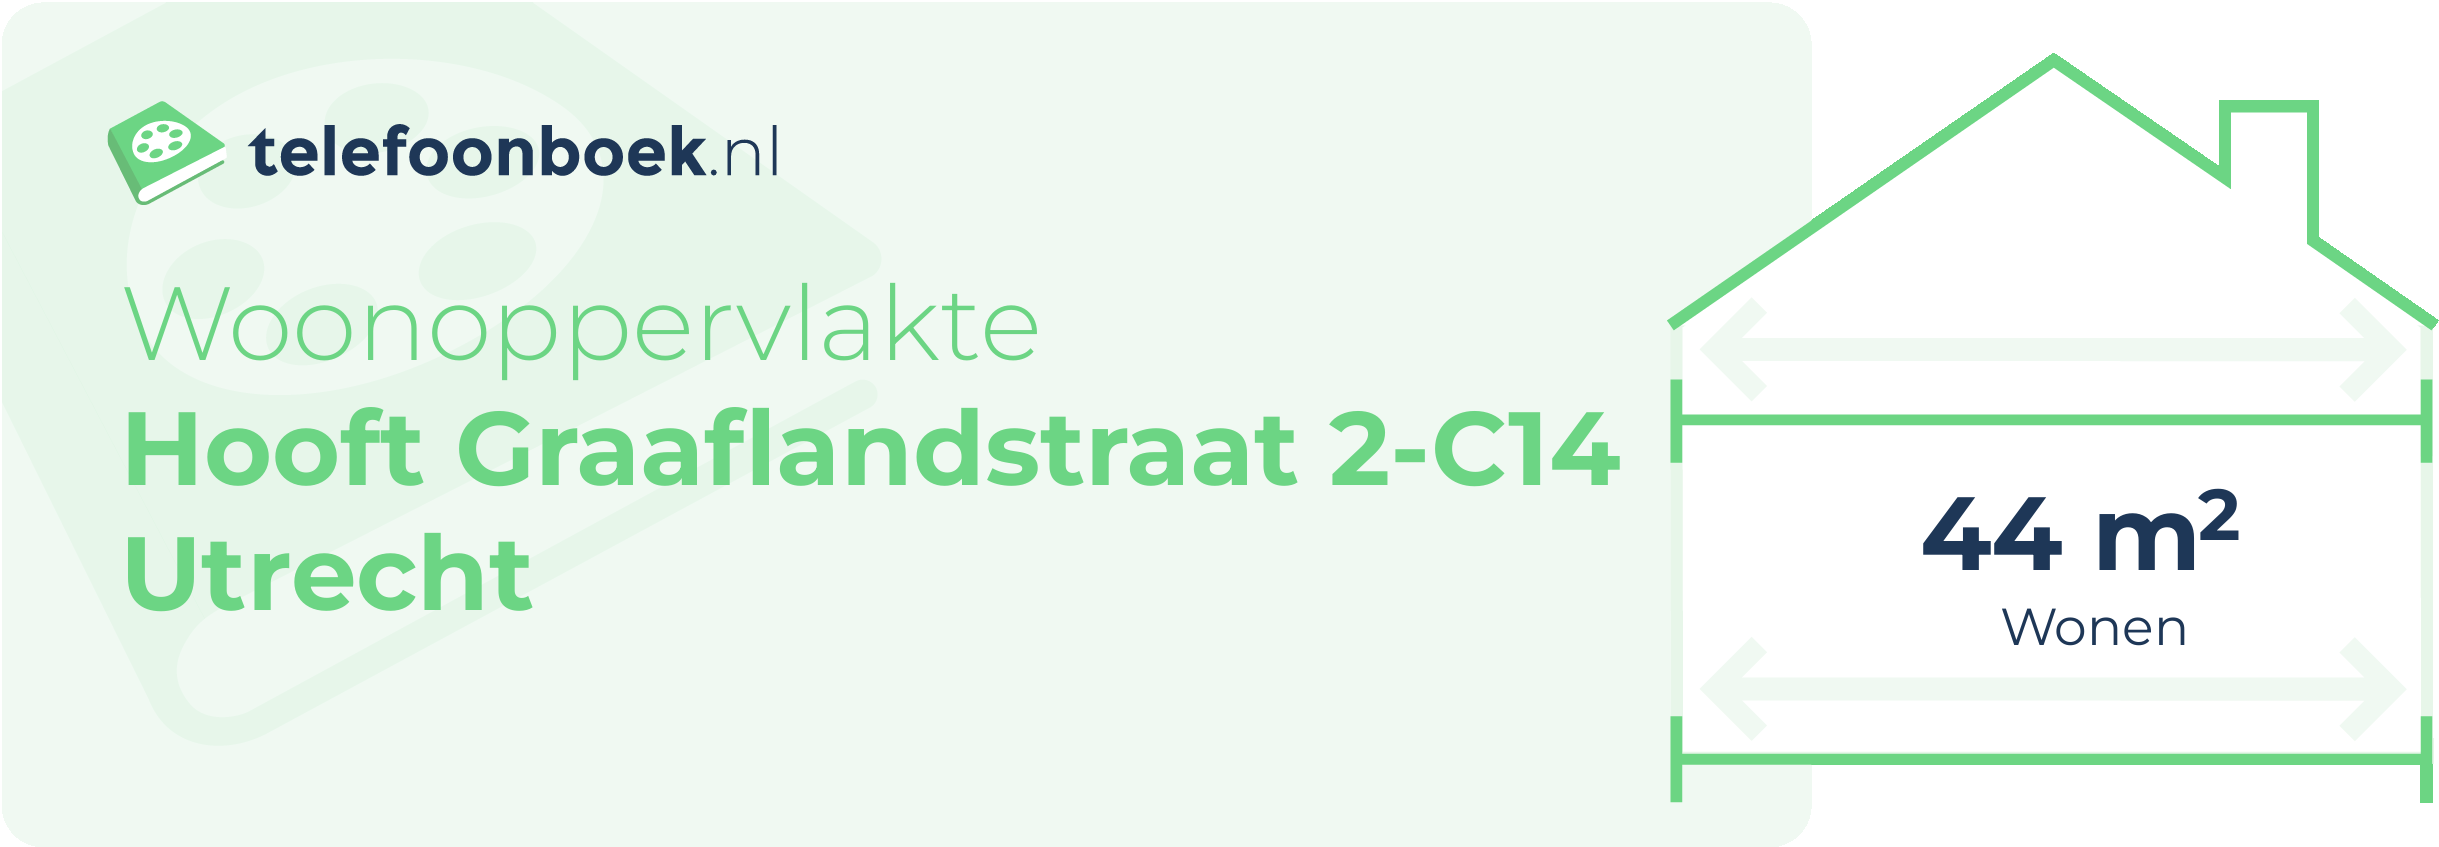 Woonoppervlakte Hooft Graaflandstraat 2-C14 Utrecht